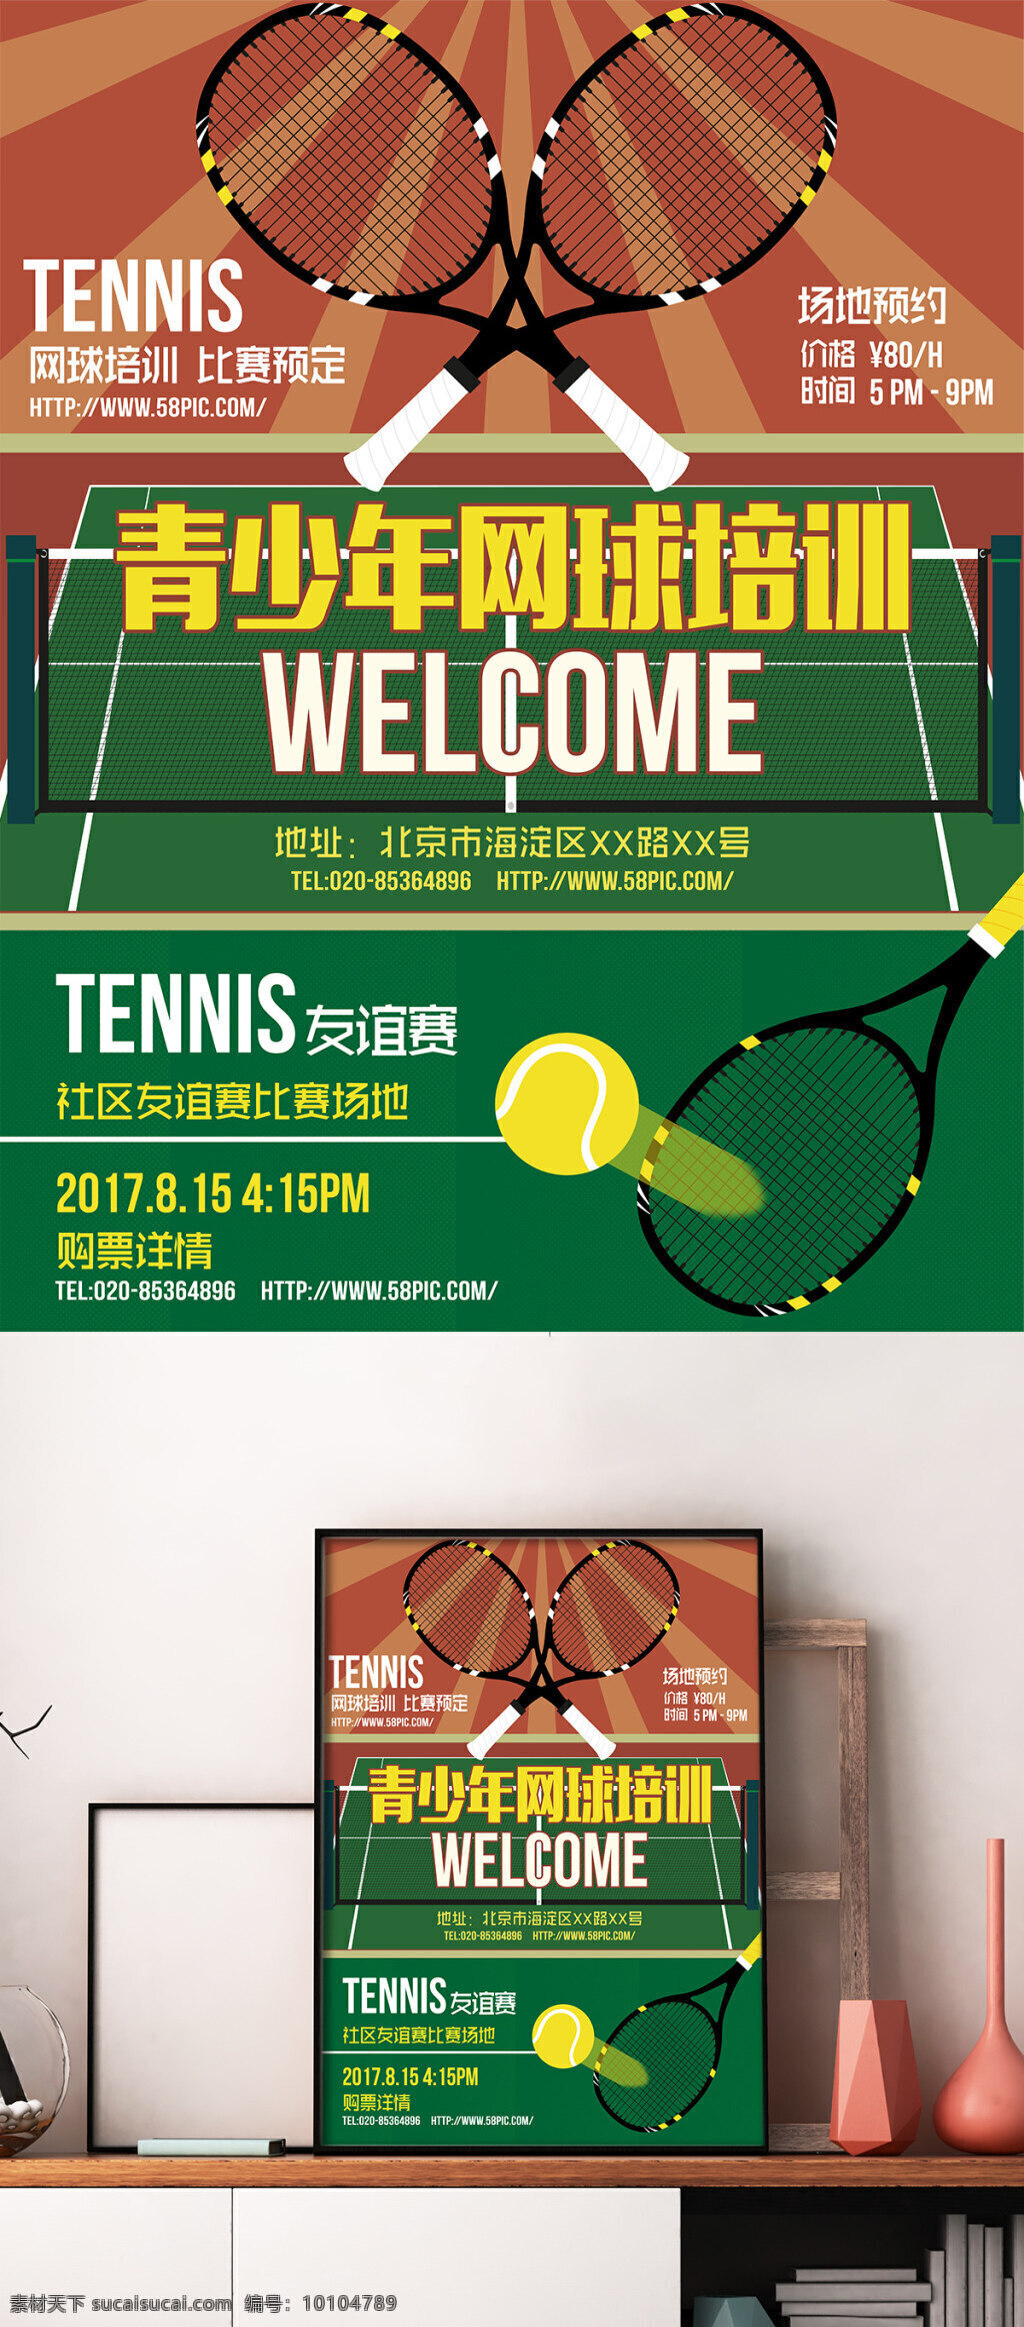 网球场地 预约 培训 宣传海报 网球 比赛 场地 通用 网球场 网球馆 日常训练 活动